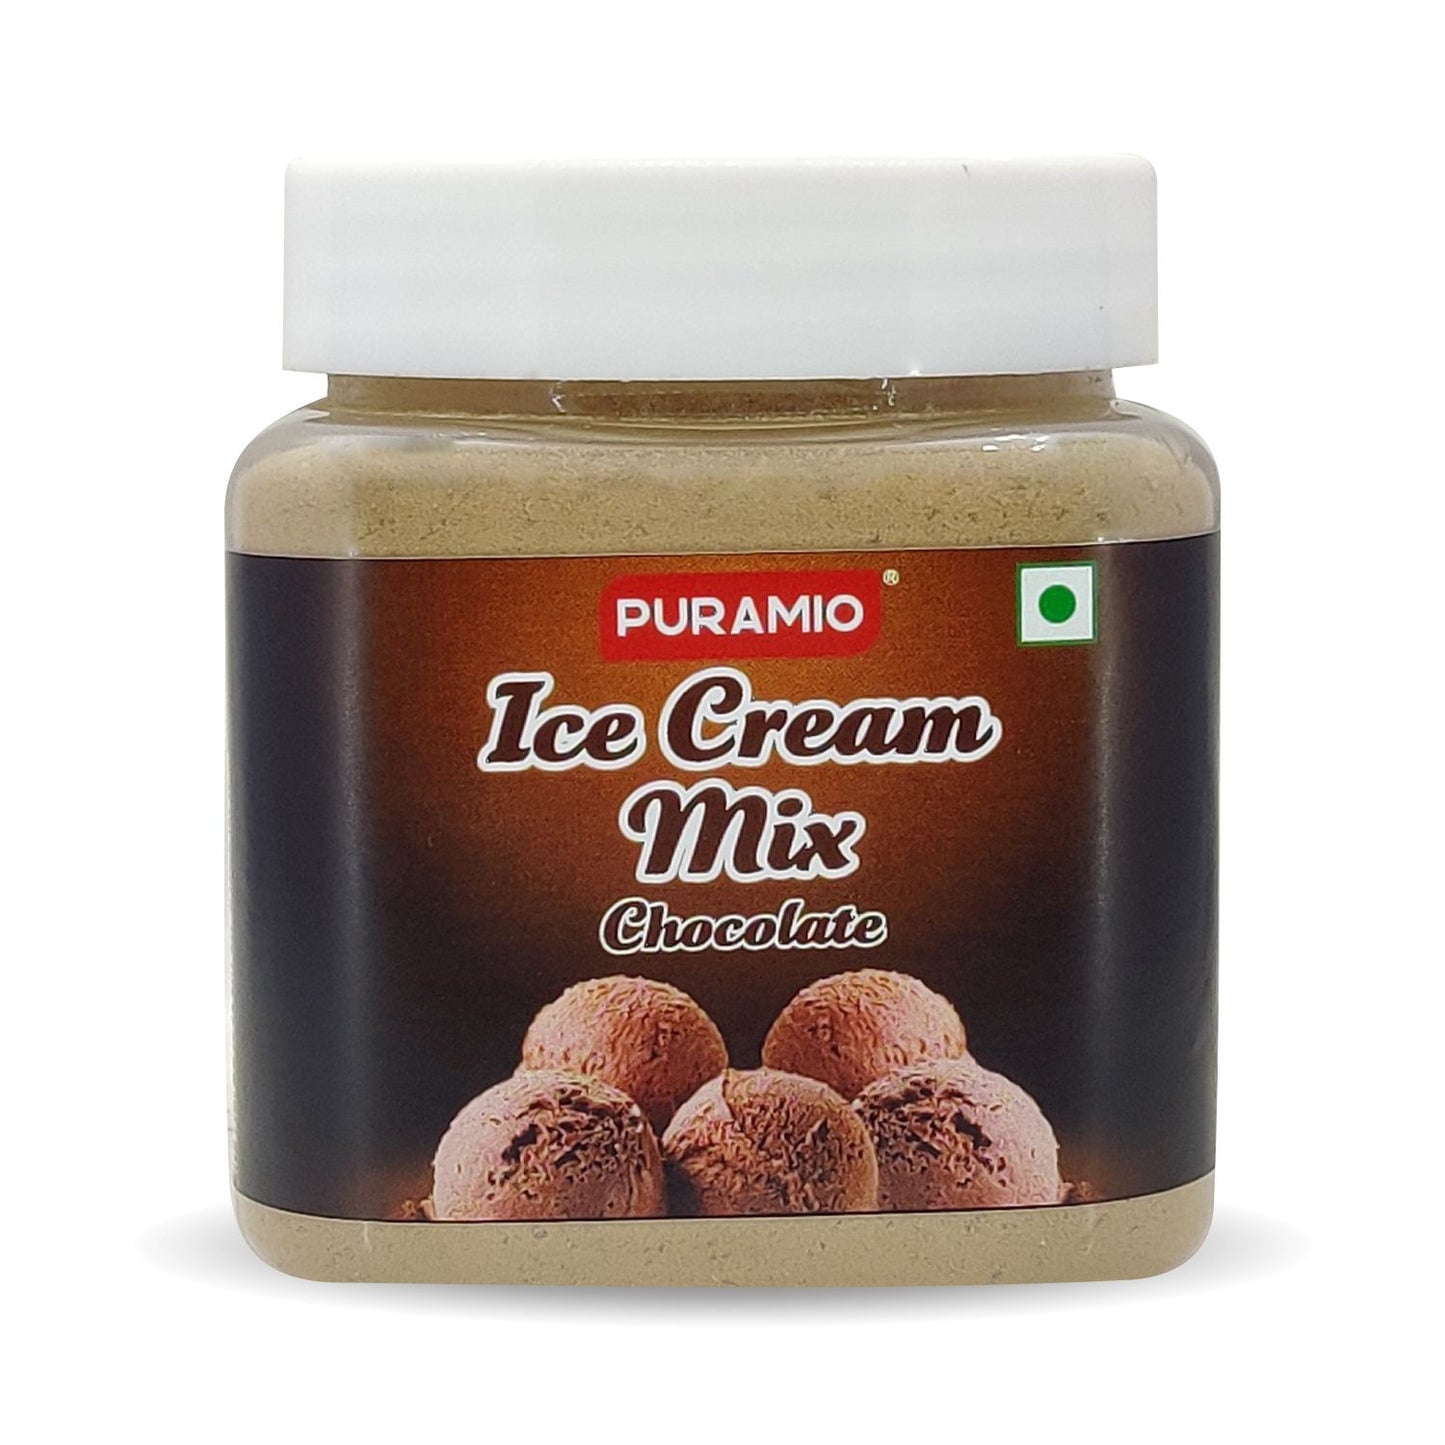 Puramio Ice Cream Mix Chocolate, 250g (Chocolate)